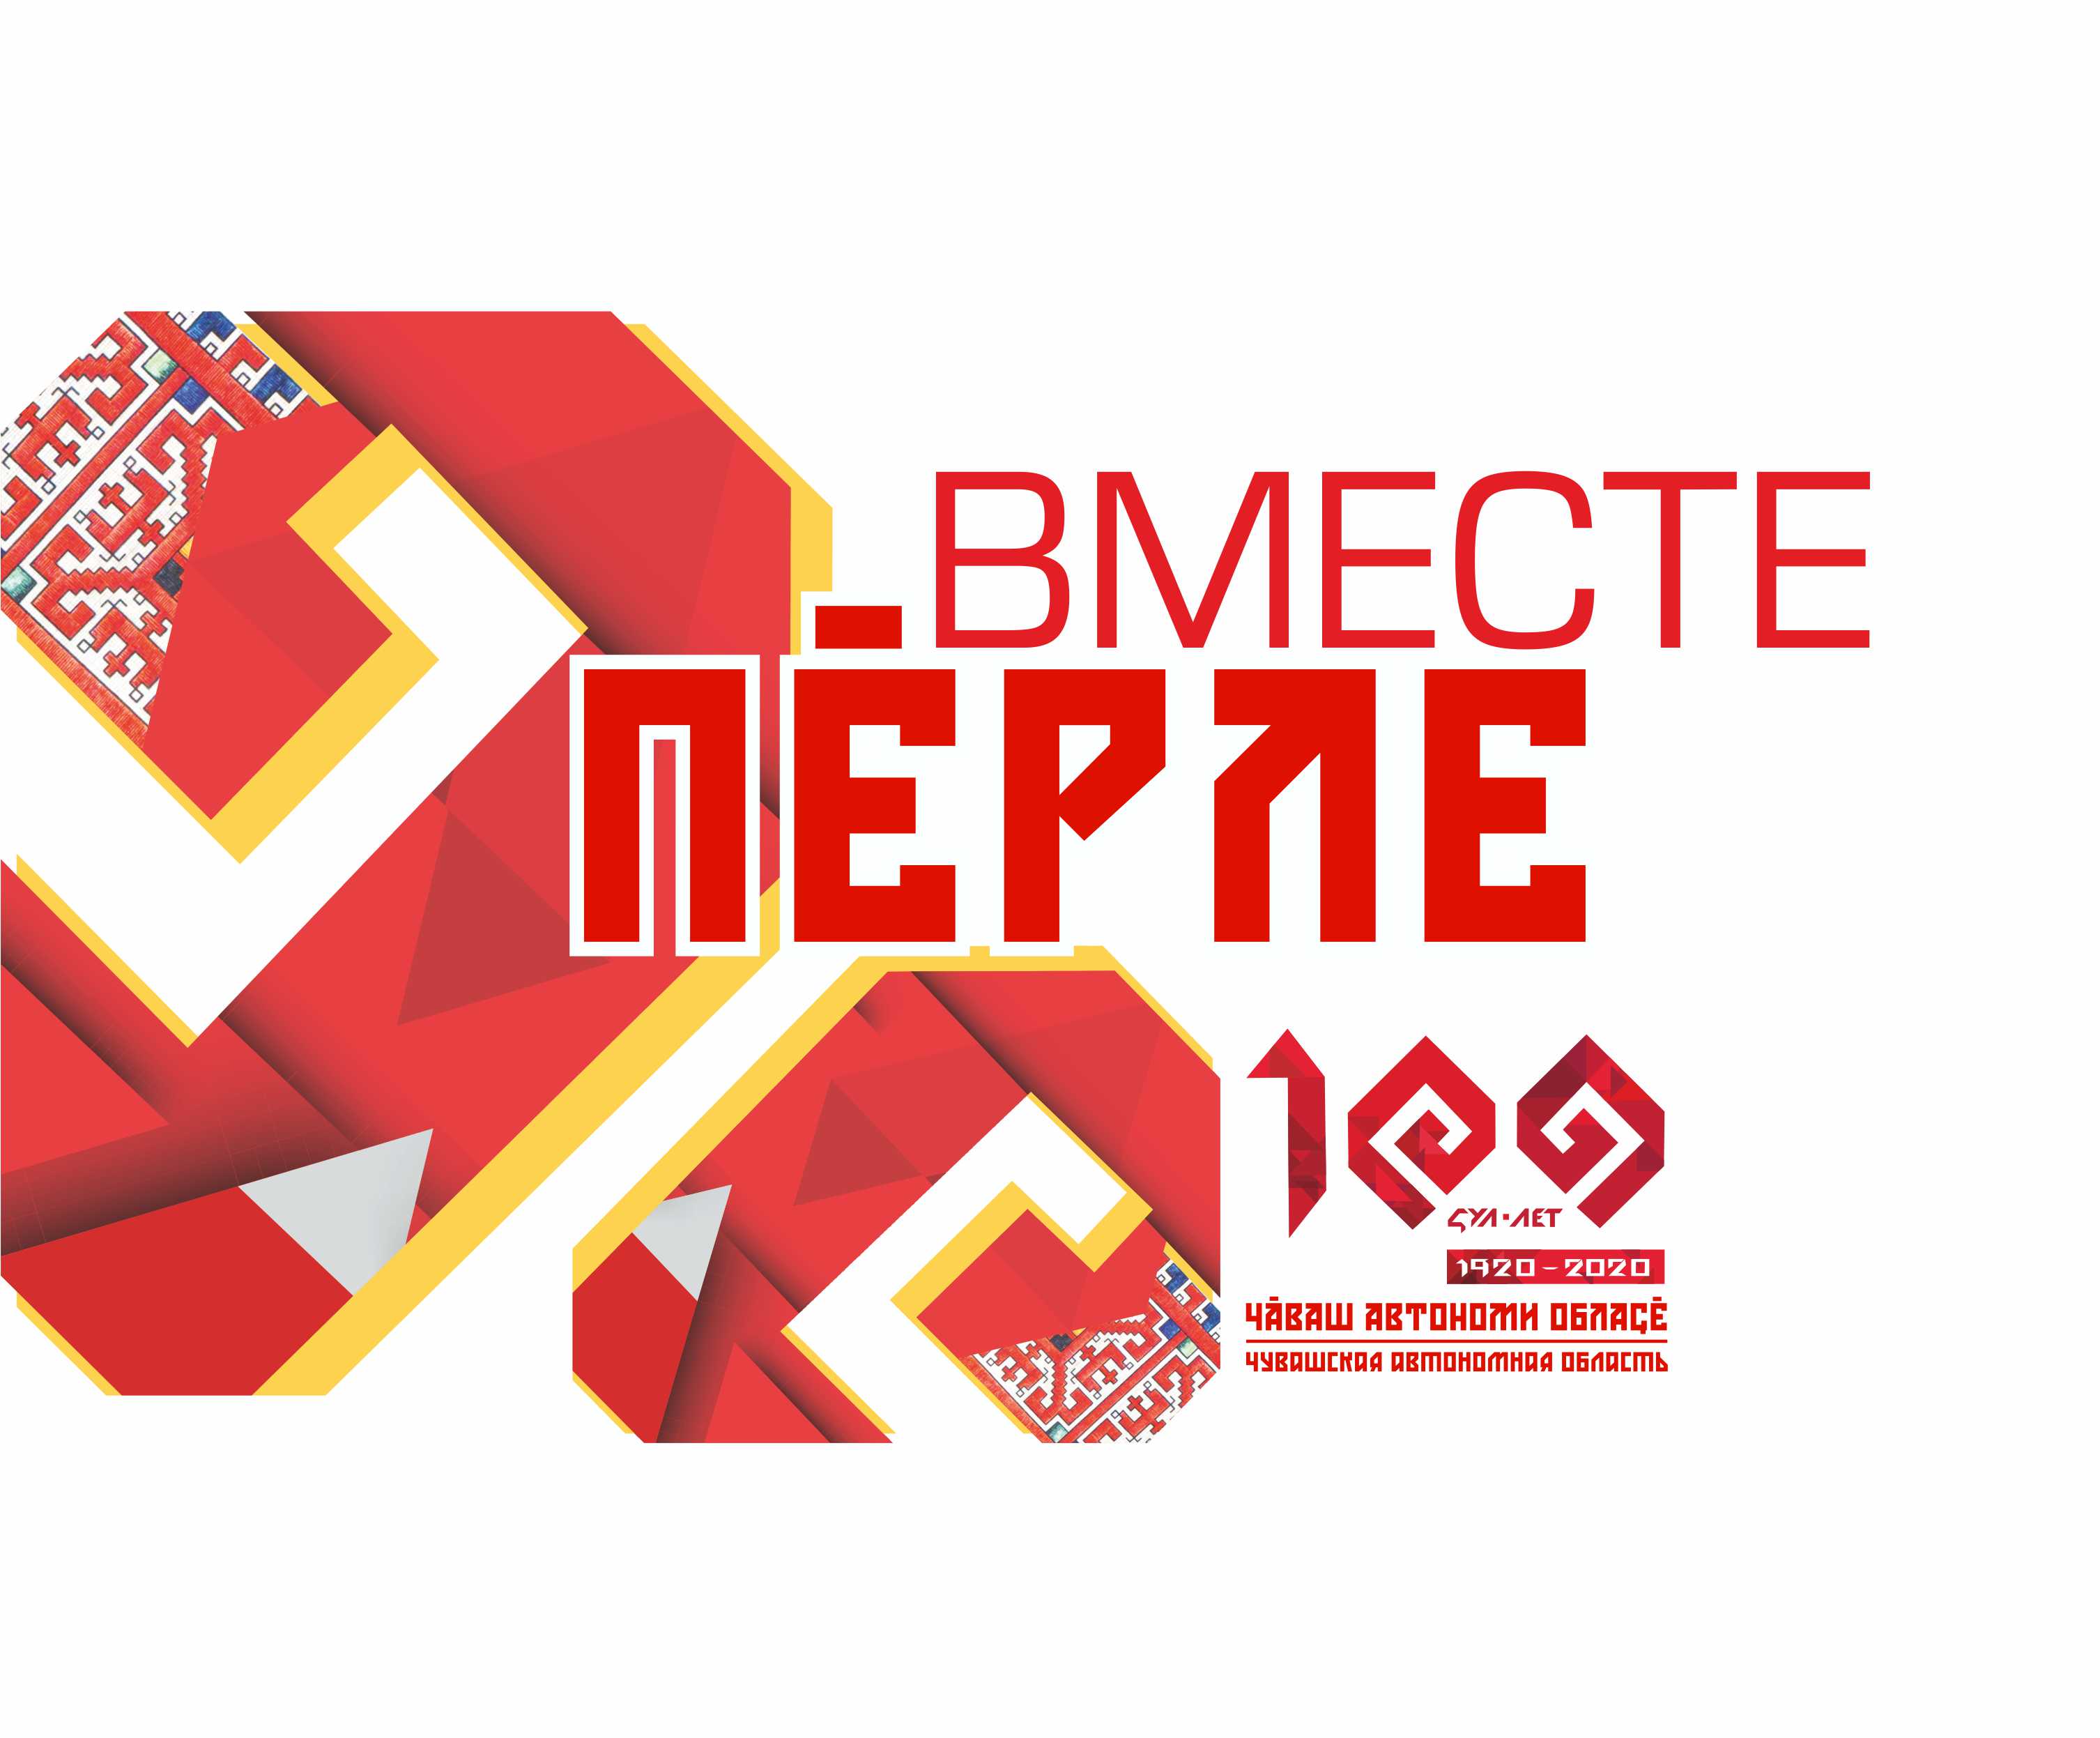 100-летие образования Чувашской автономной области